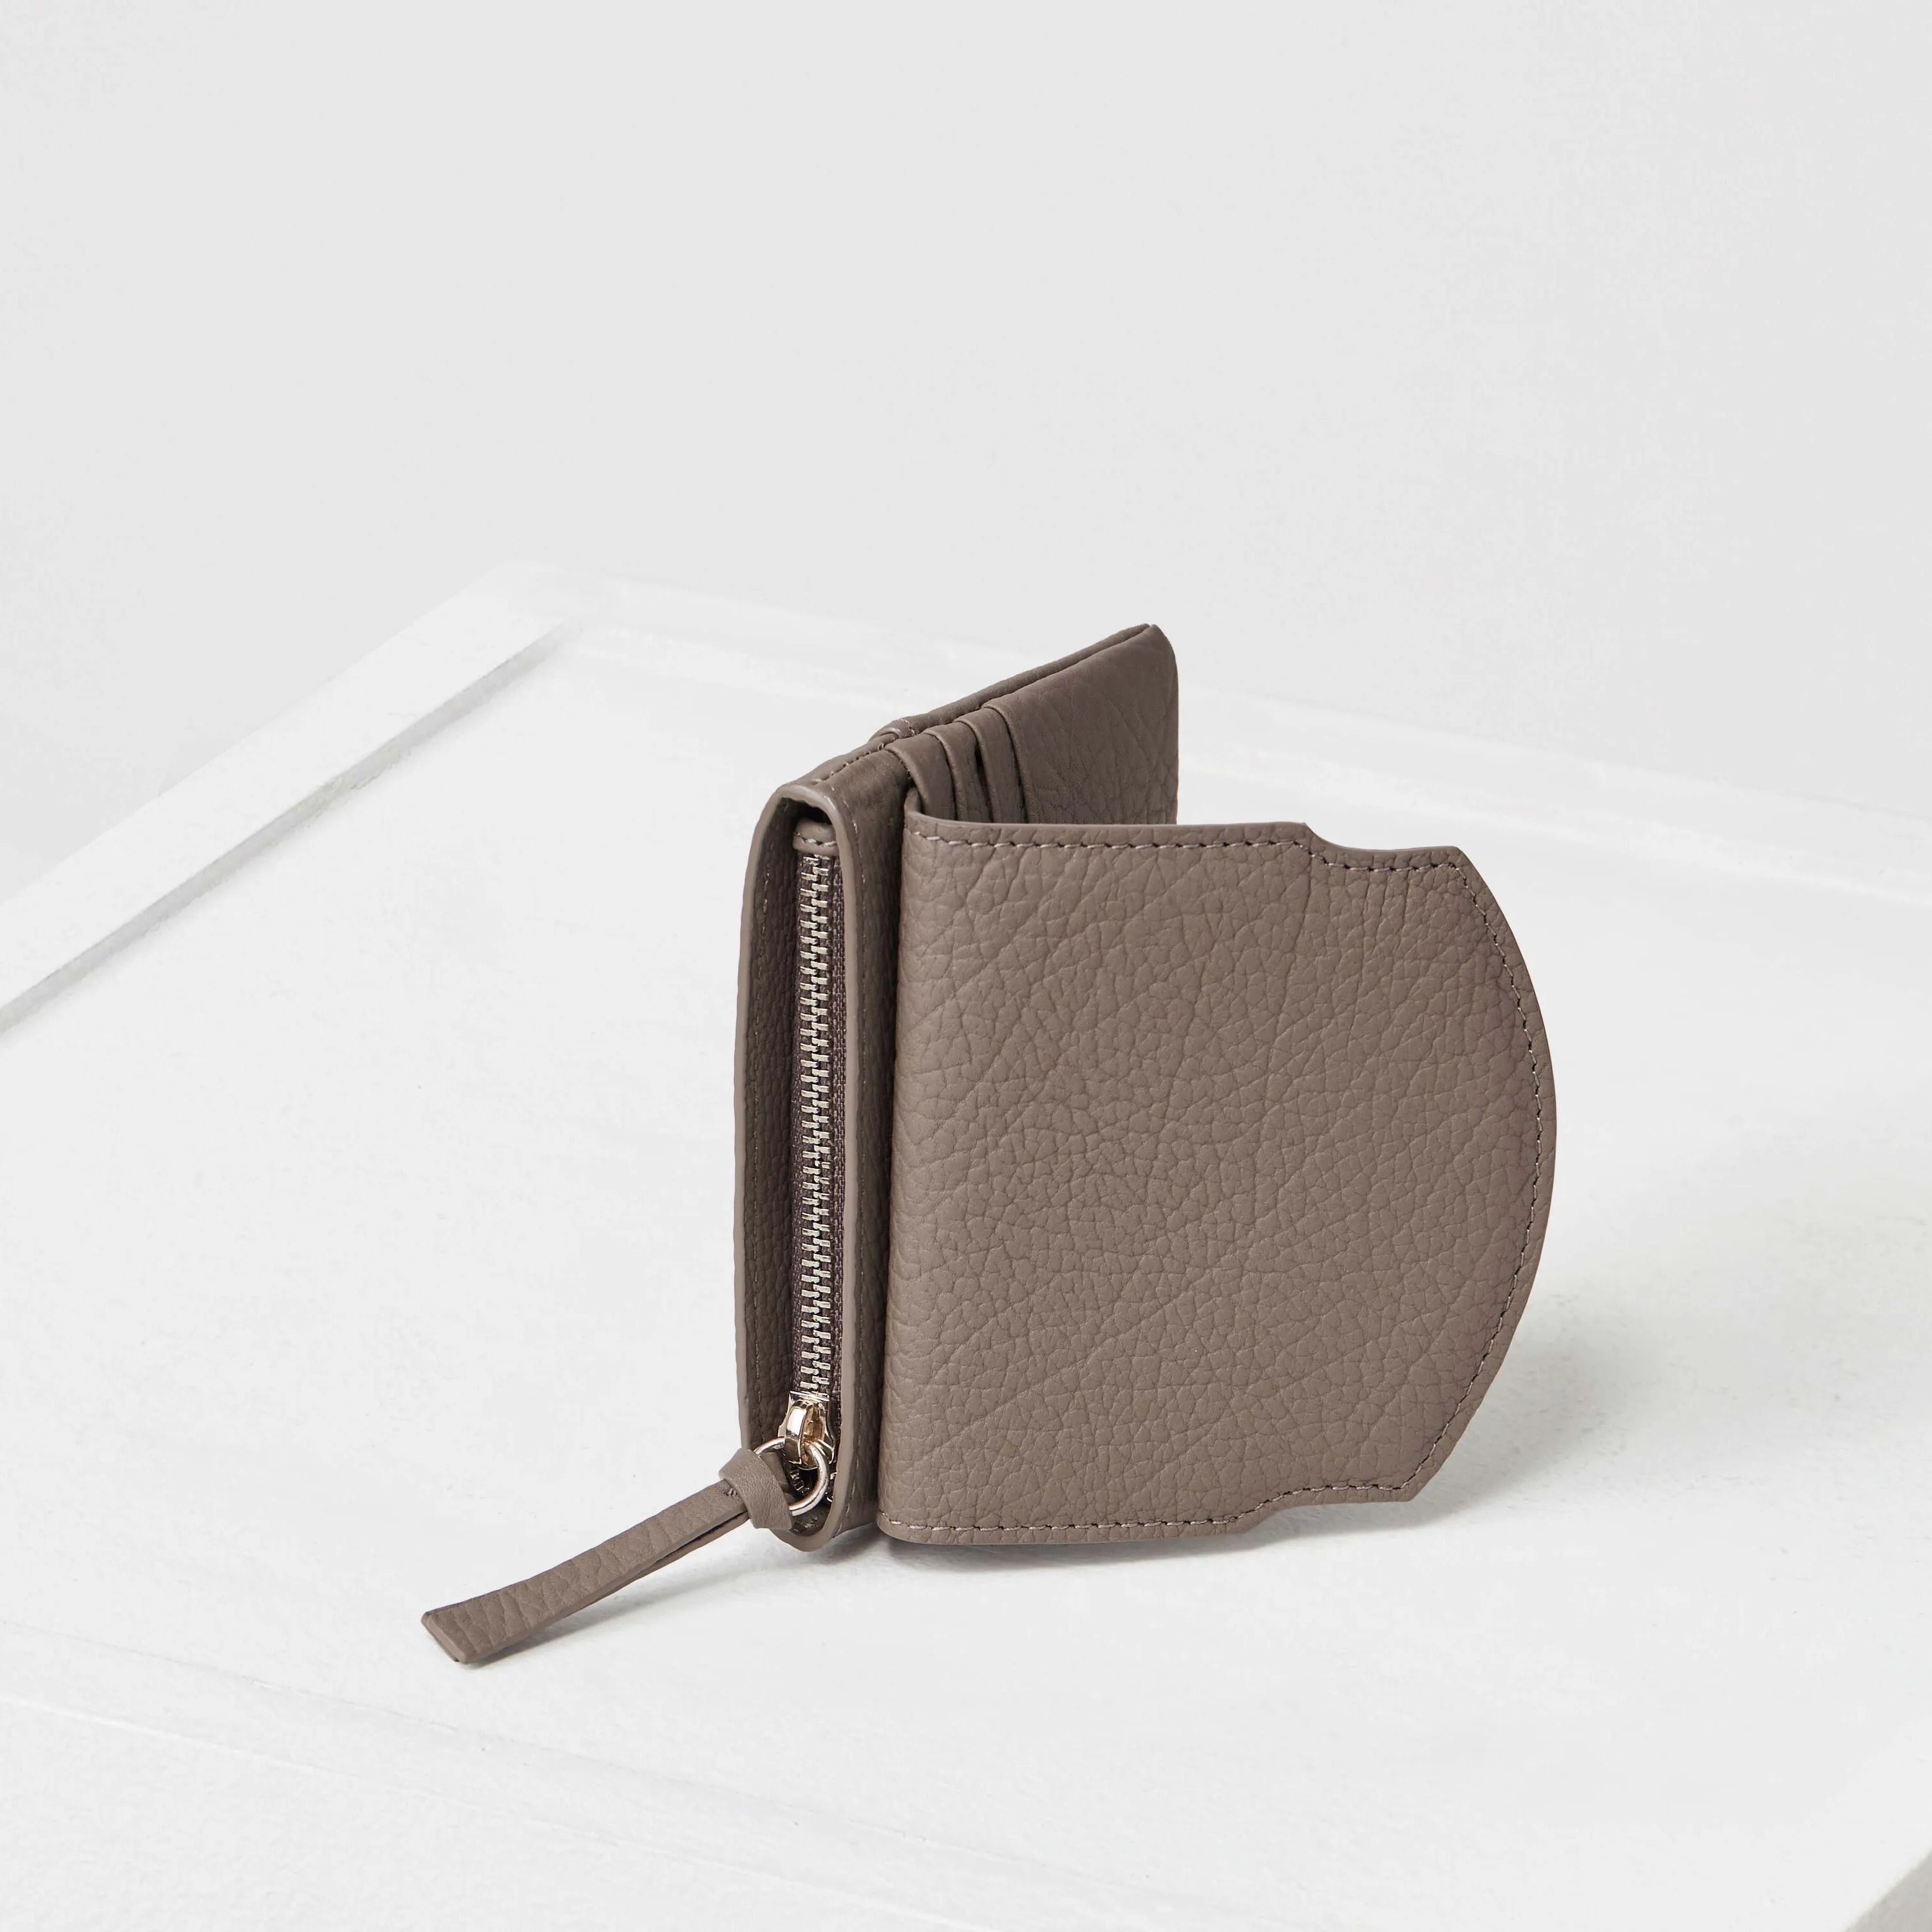 أعلى جودة سستة جلد طبيعي مفتاح المحفظة عملة بطاقة البريدي مع المعصم حزام حبل قصيرة ل مفتاح الحقيقي حقيبة